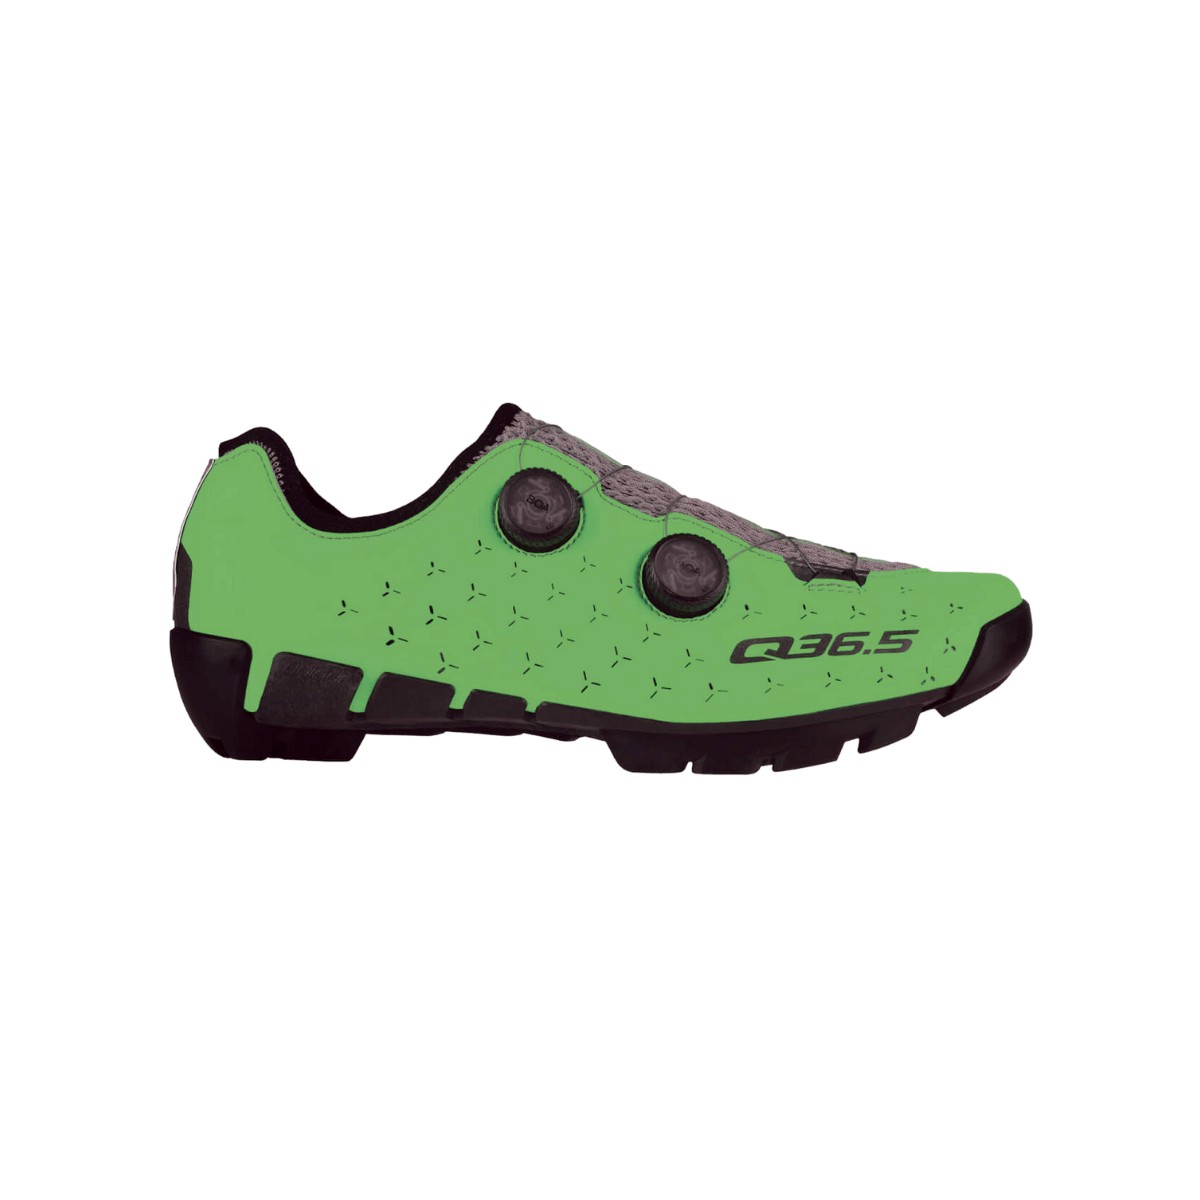 Photos - Cycling Shoes Q36.5 Unique Adventure Shoes Fluor Green, Size 44,5 - EUR 301.3-445